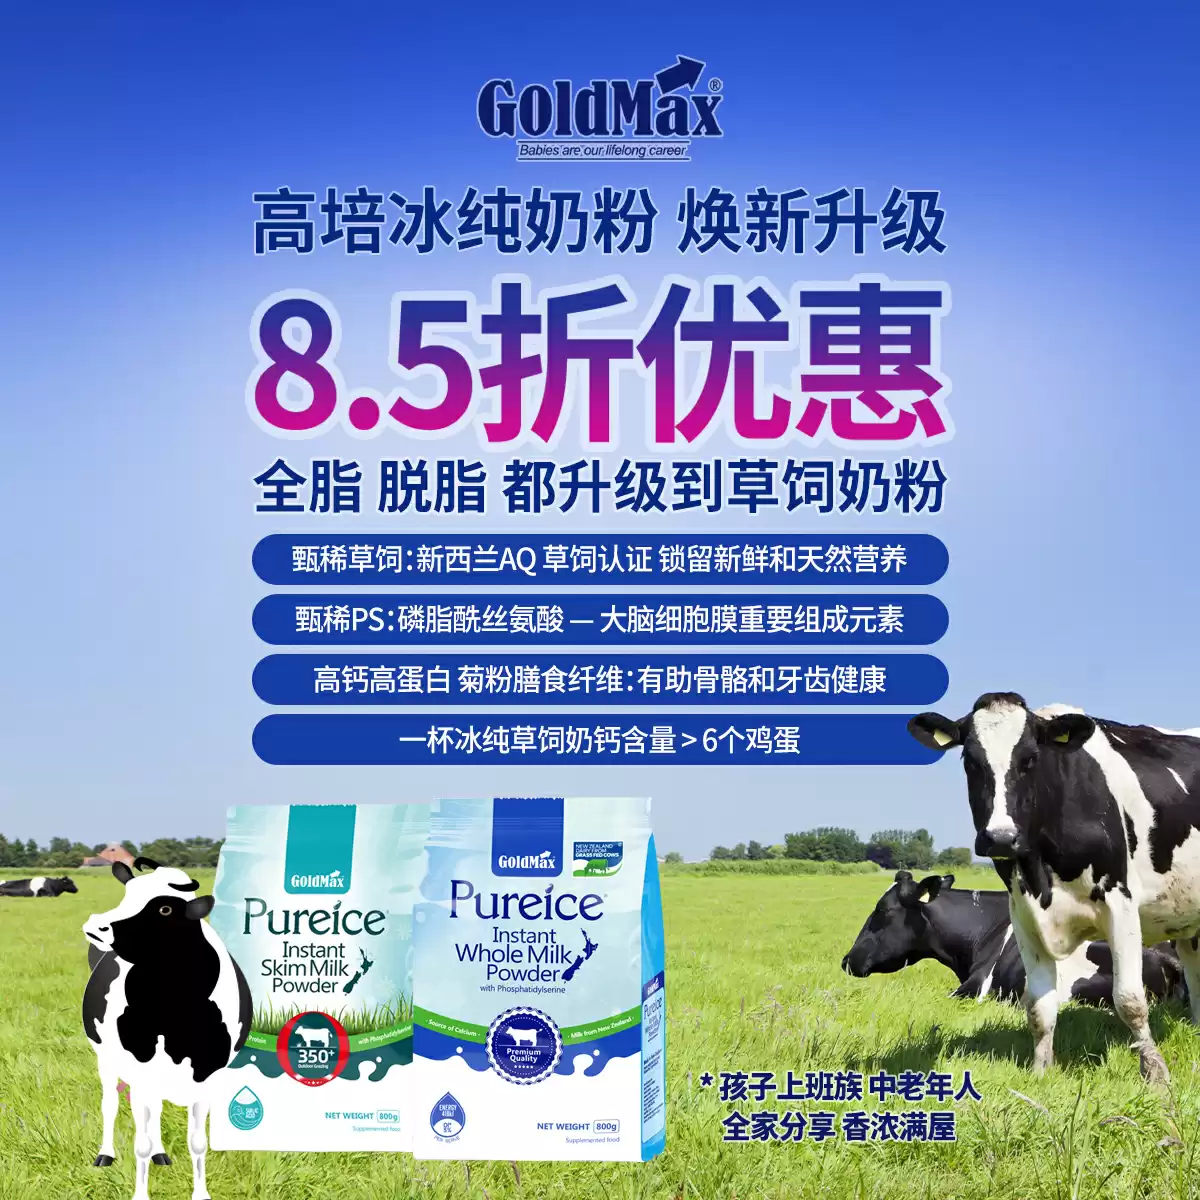 GOLDMAX Milk Powder 15% off